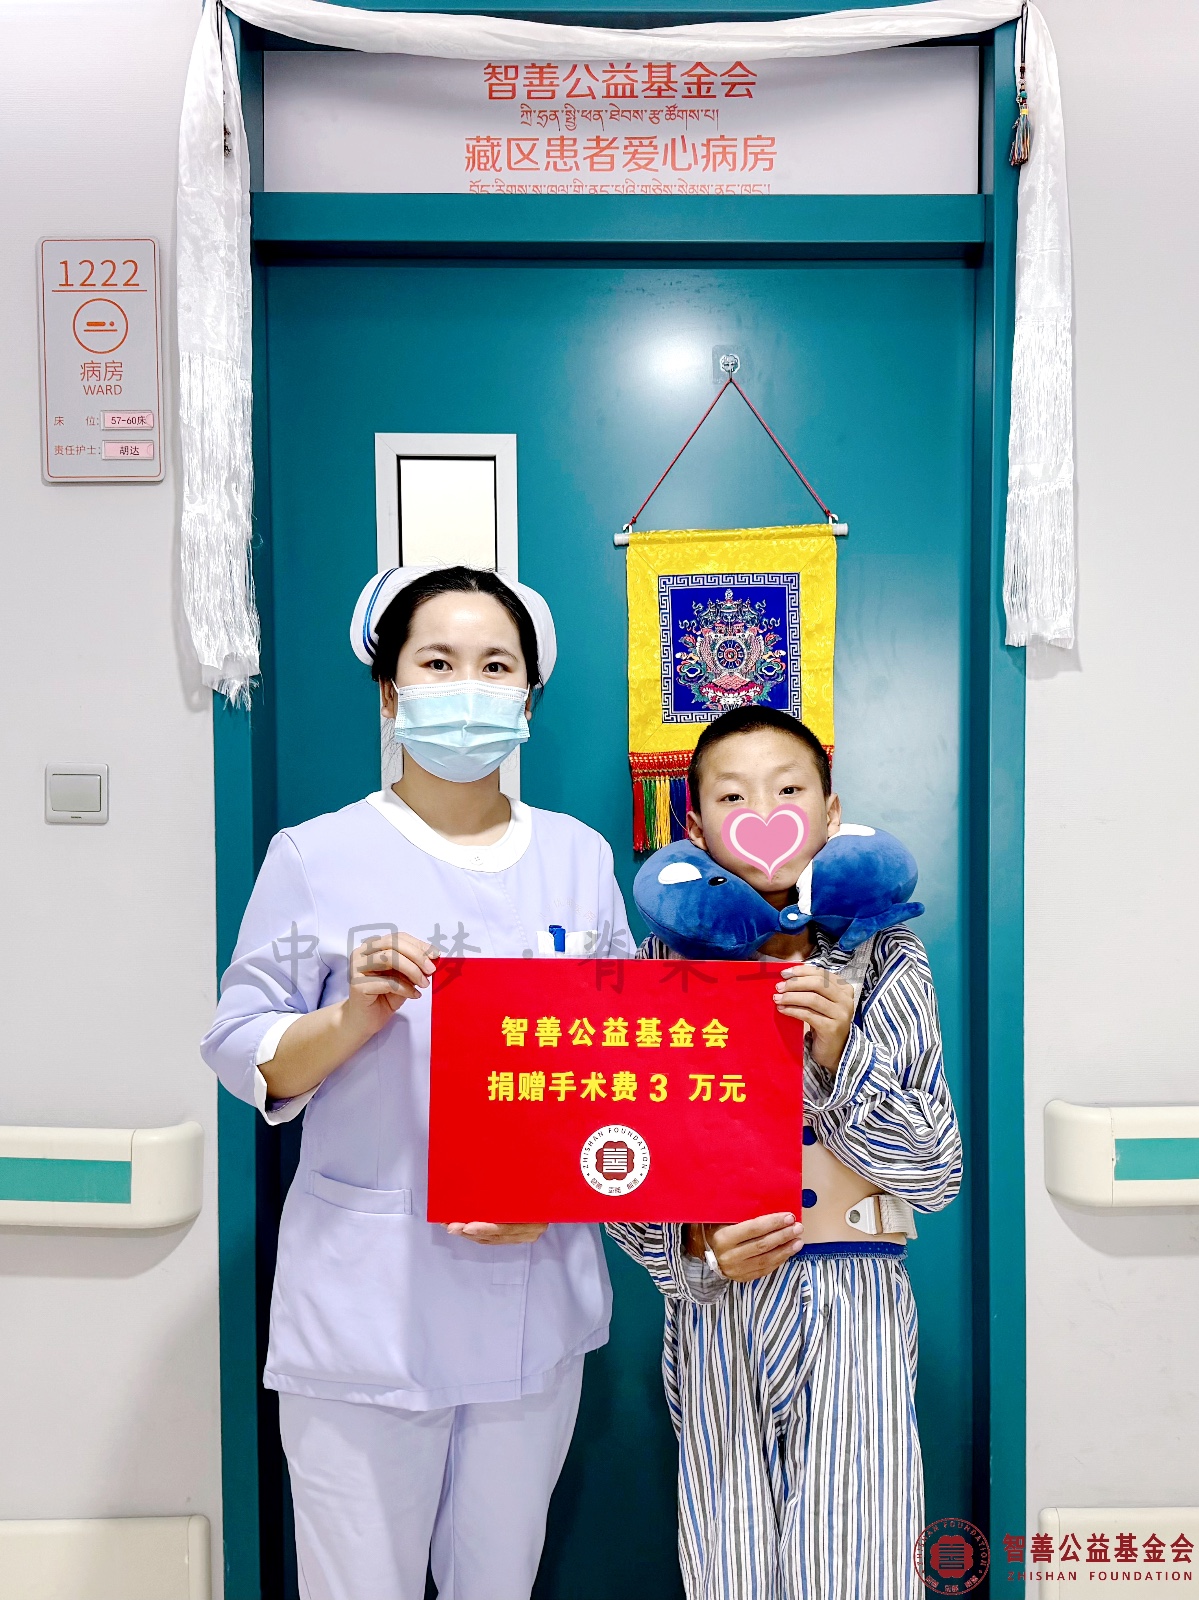 6 北京优联医院杨海棠护士将智善公益基金会捐赠的3万元转交给西藏那曲巴青县患者小次.jpg